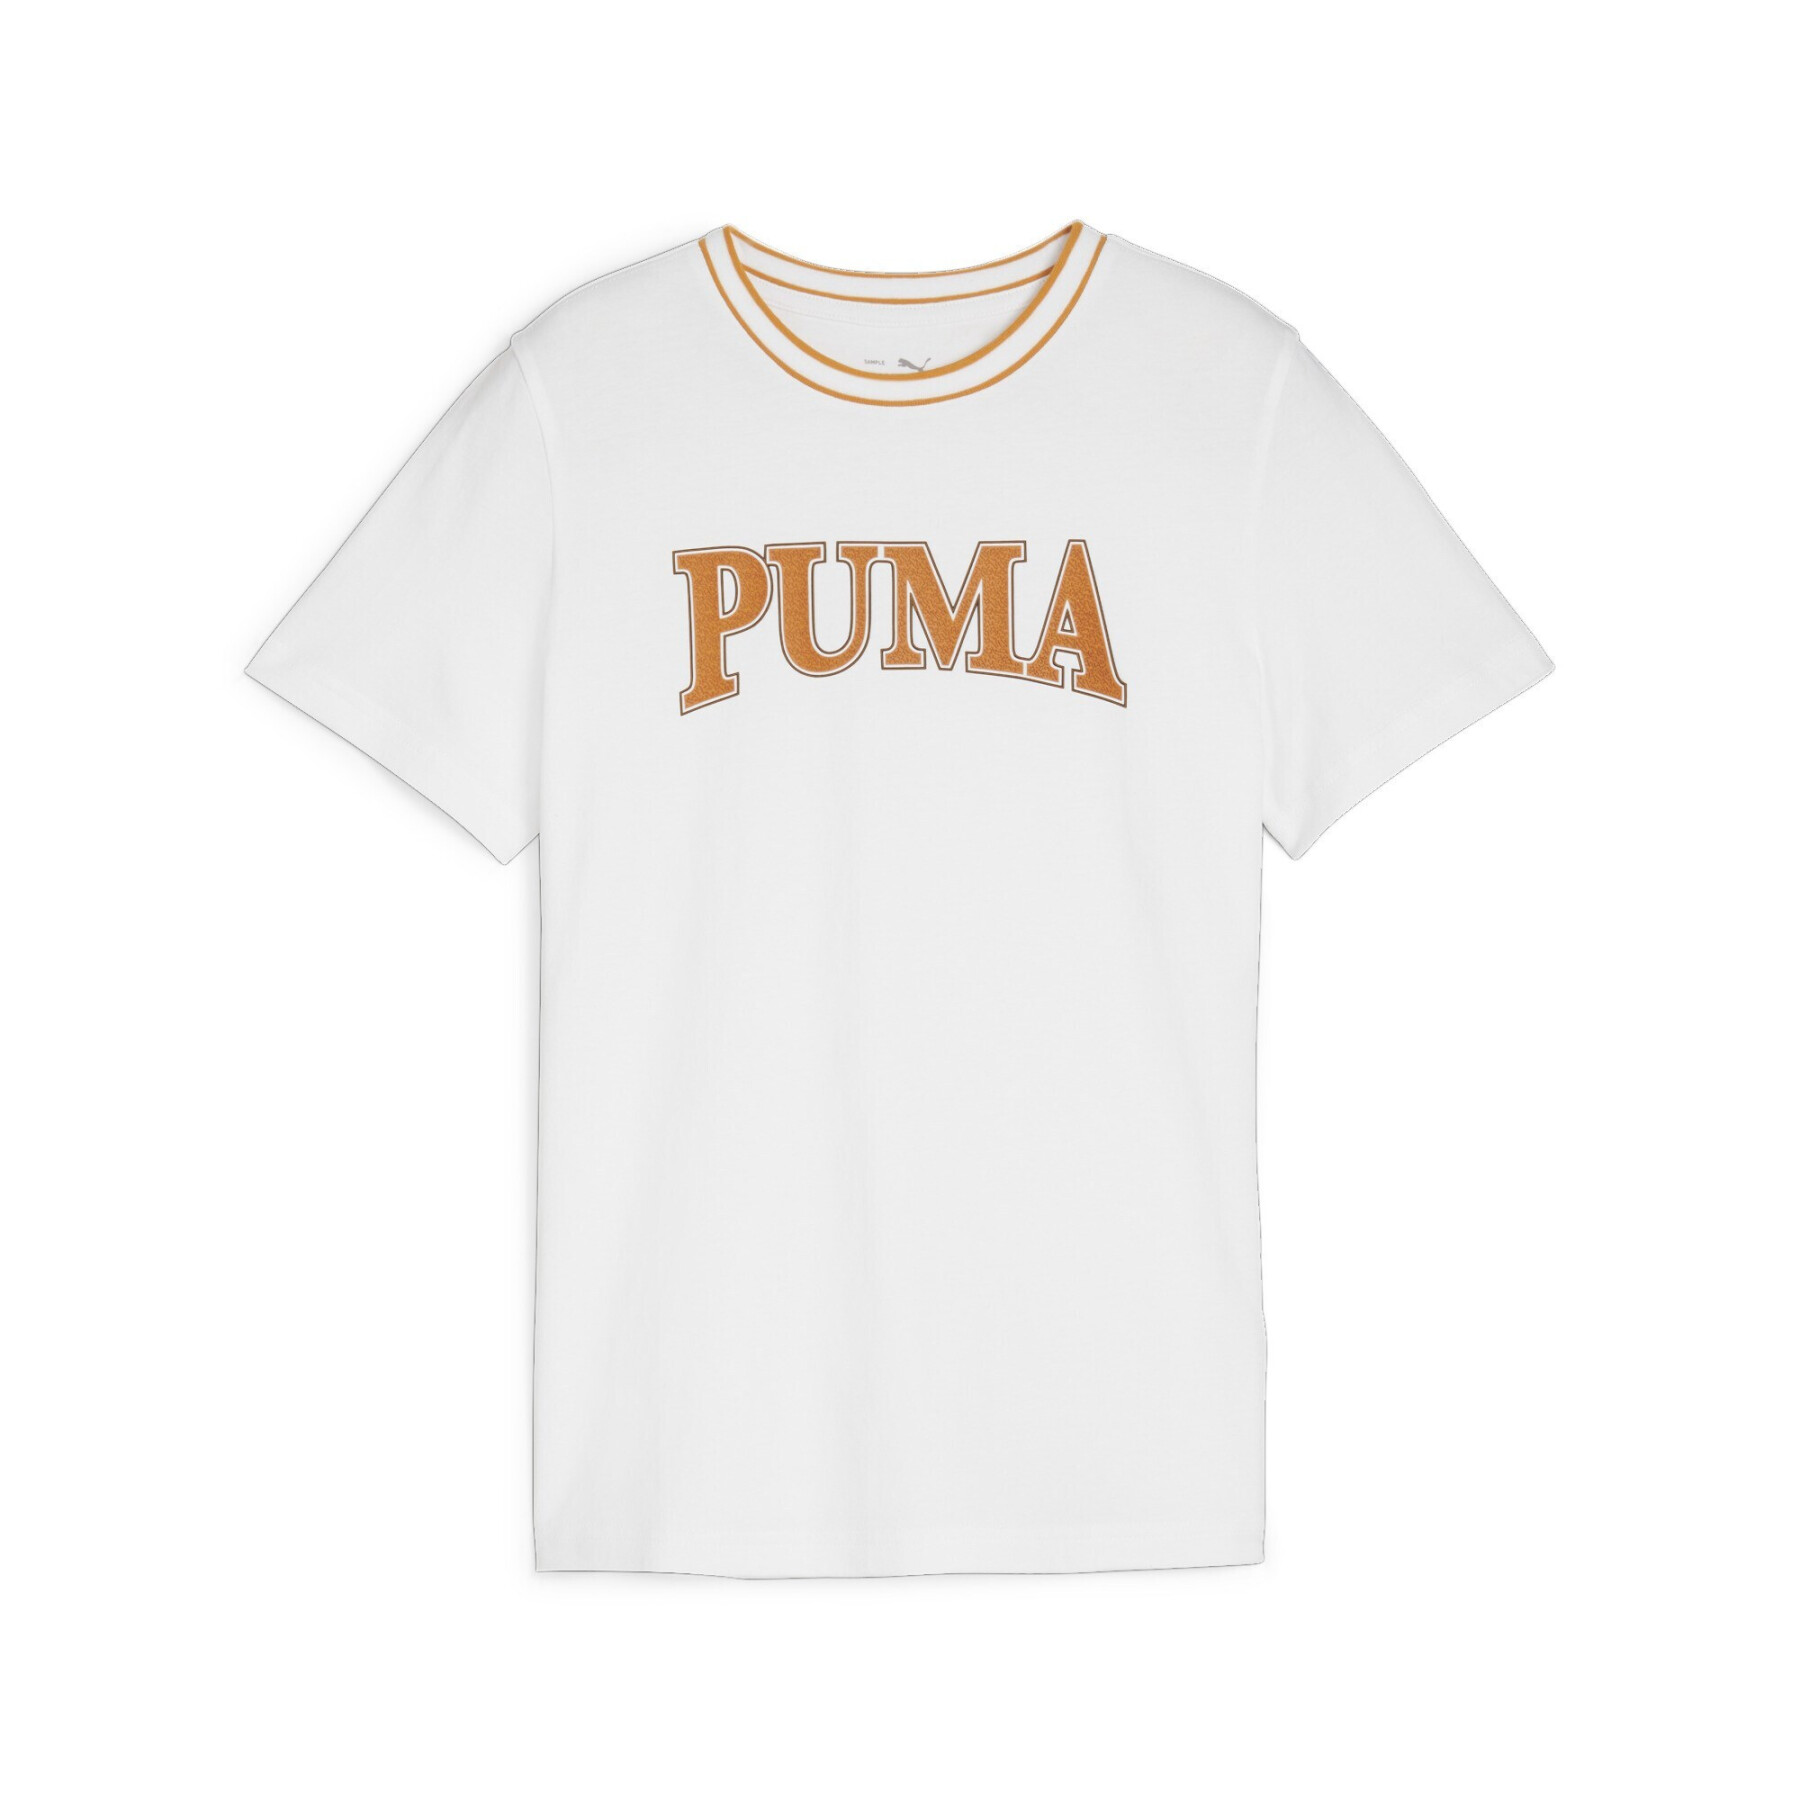 T-shirt de criança Puma Squad